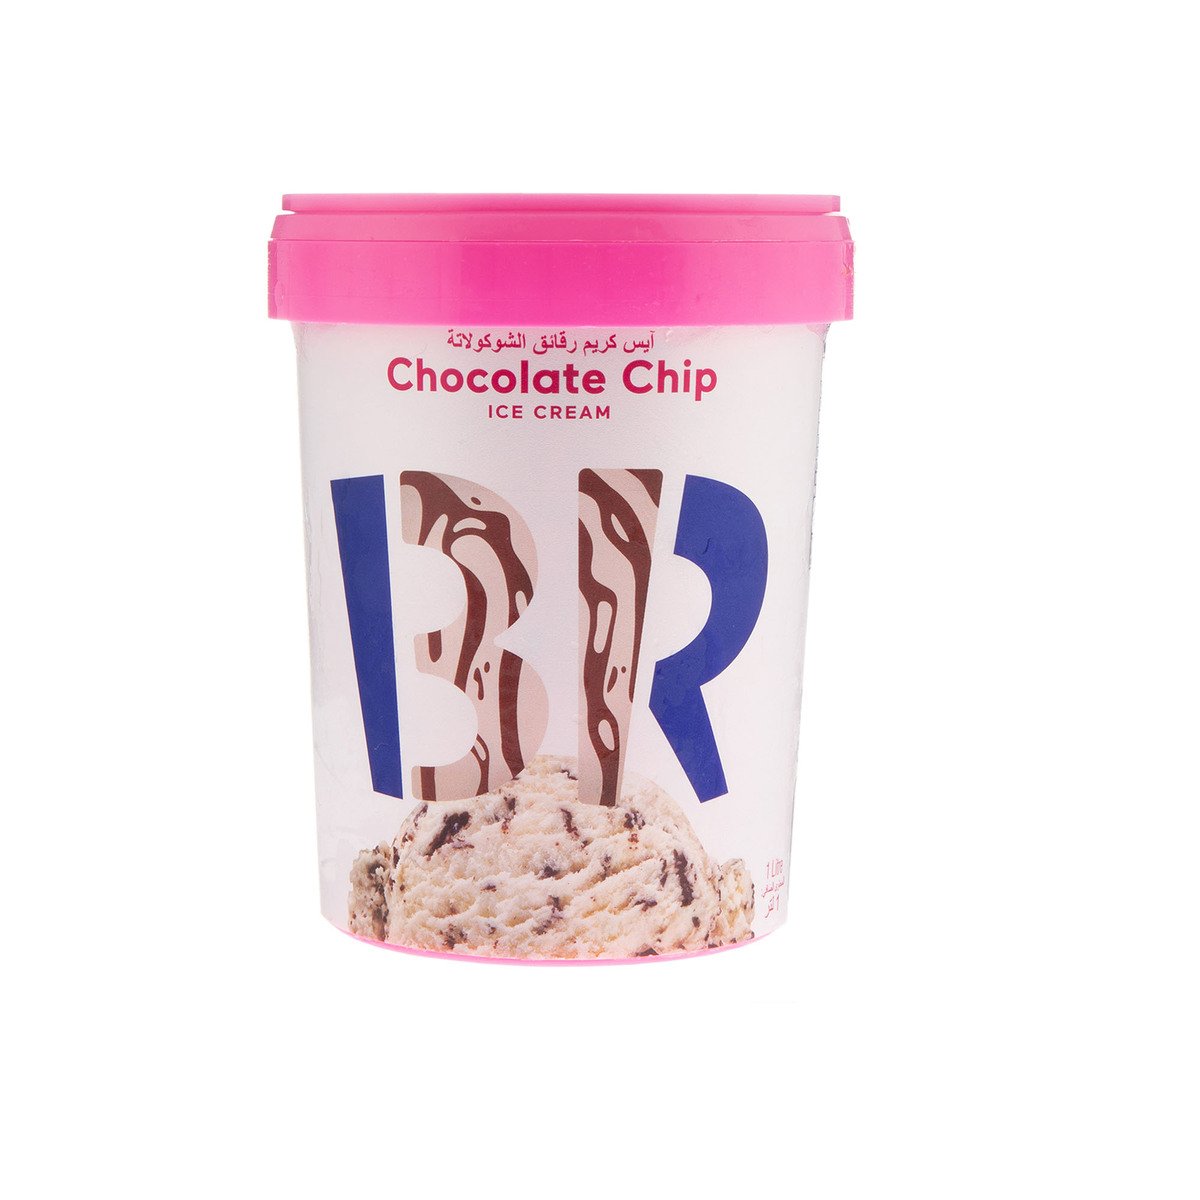 اشتري قم بشراء باسكن روبنز ايس كريم برقائق الشوكولاتة 1 لتر Online at Best Price من الموقع - من لولو هايبر ماركت Ice Cream Take Home في الامارات